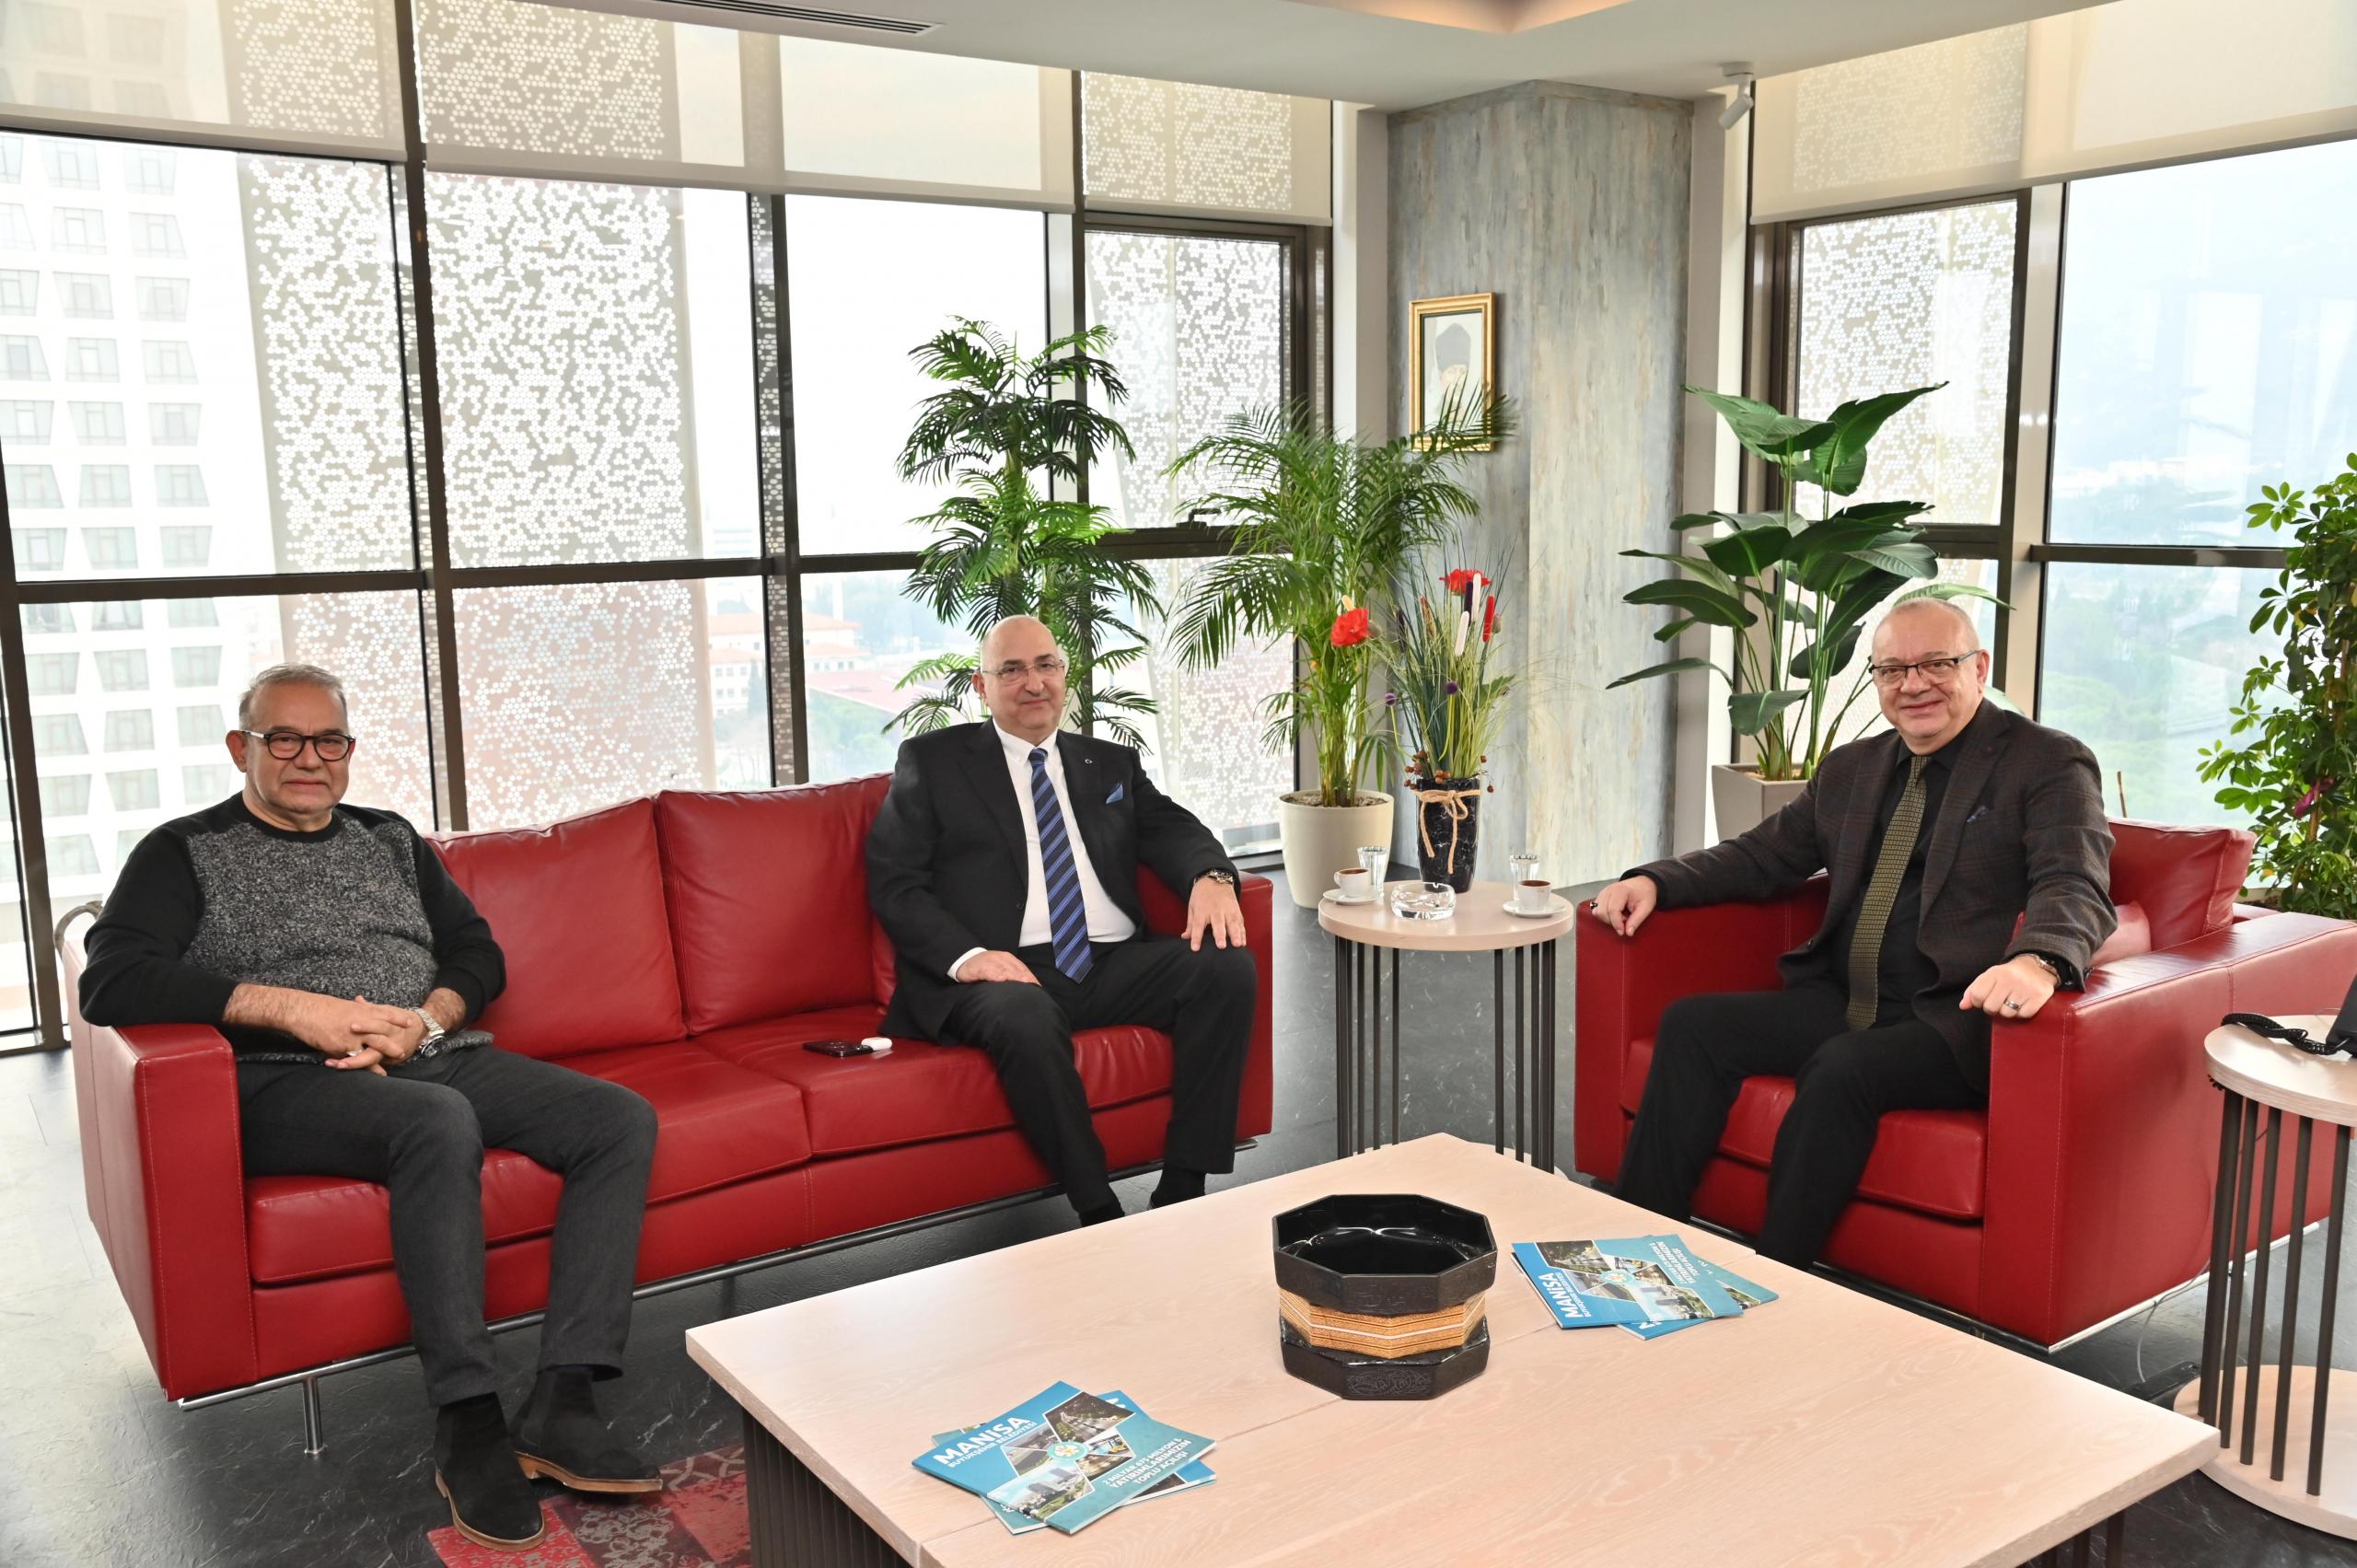 Başkan Cengiz Ergün, Organize Sanayi Bölgesi Başkanı Sait Türek ile iş insanı Arif Koşar’ı makamında konuk etti.